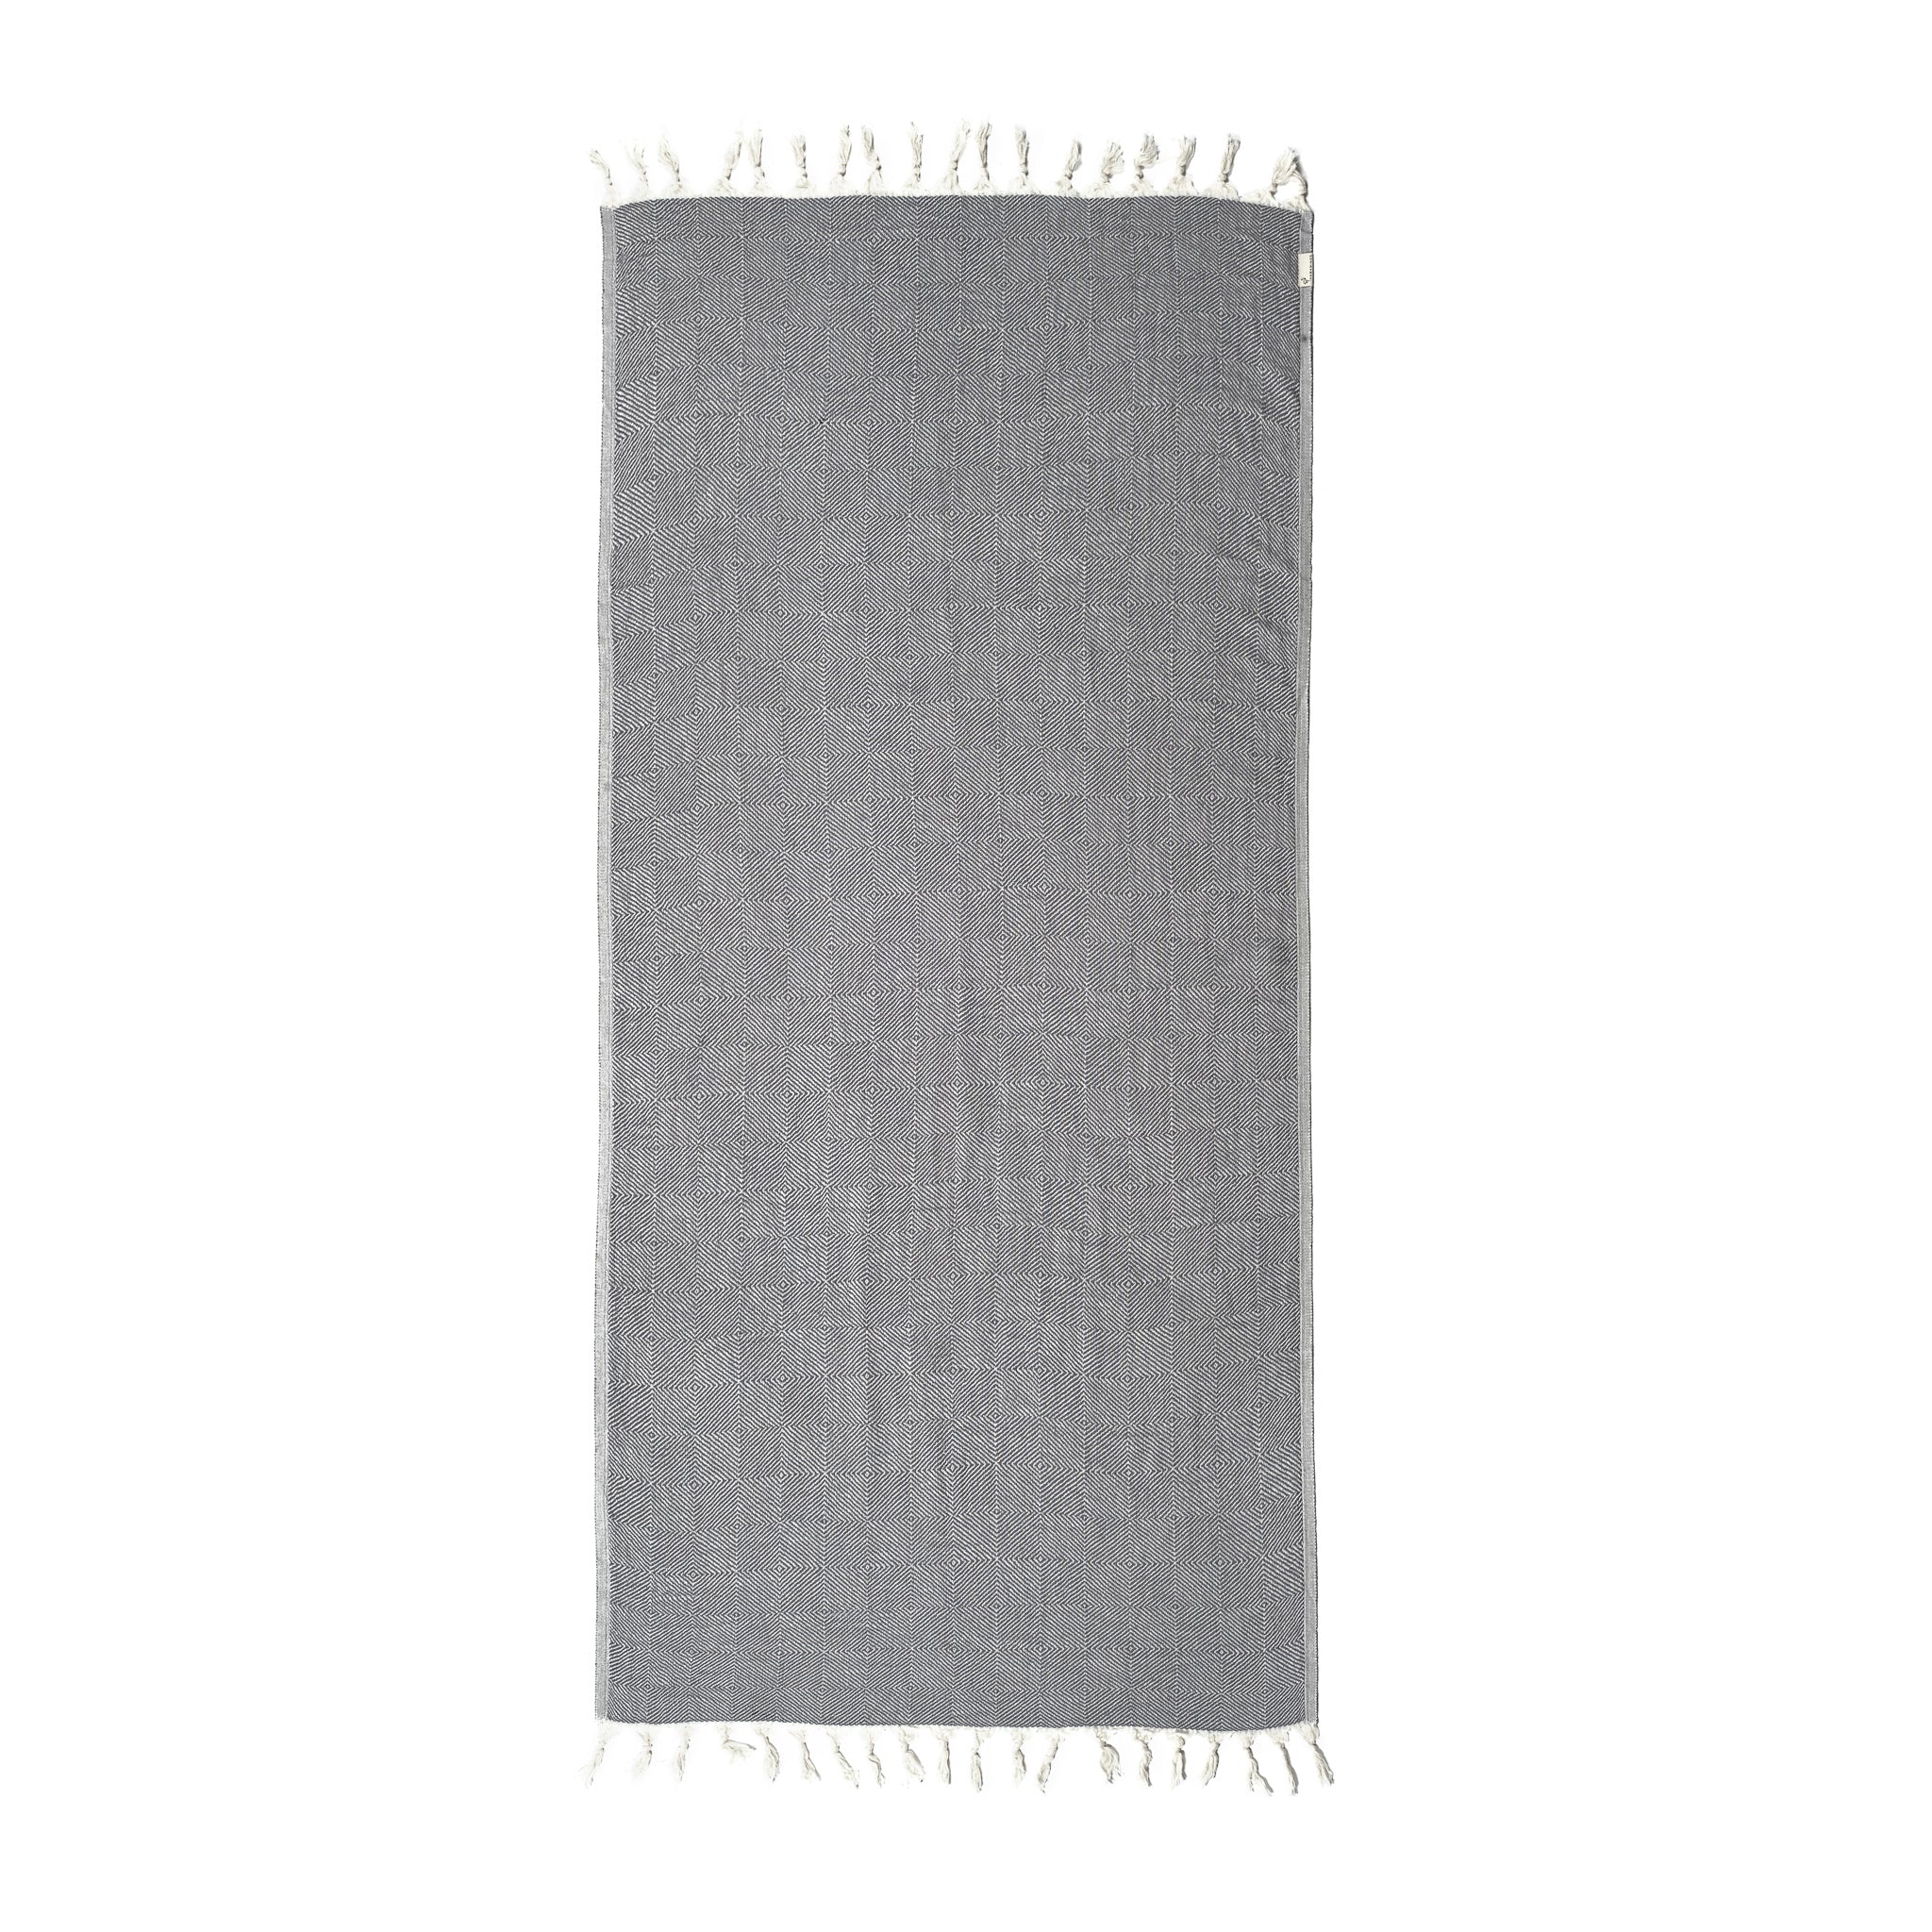 Trocadero Towel Charcoal Grey & Silver Grey